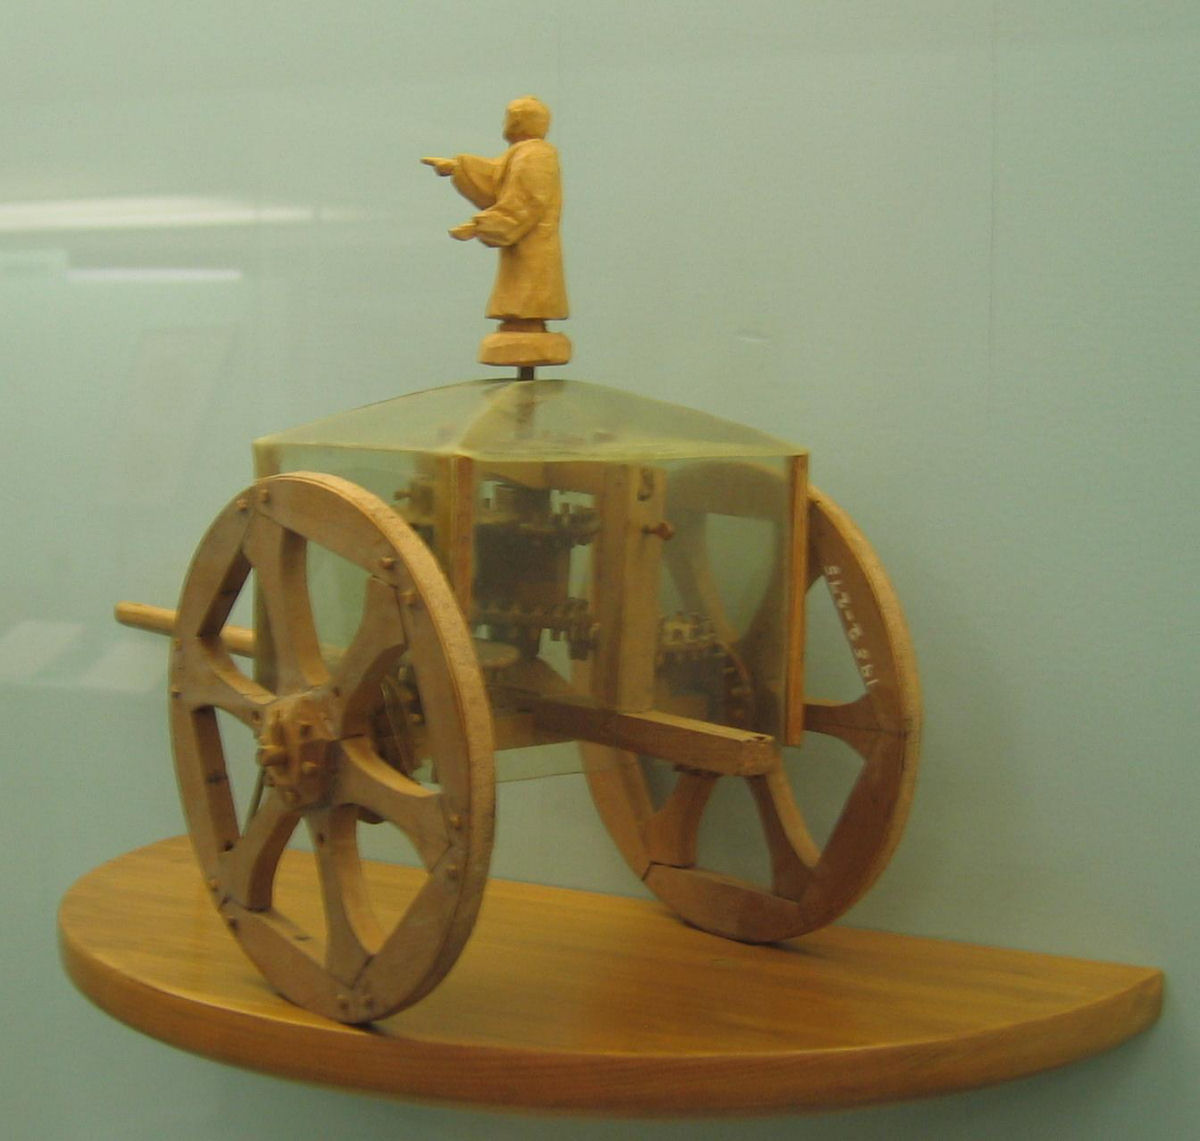 A carruagem que sempre aponta para o sul, usada na China antiga para navegar sem magnetismo